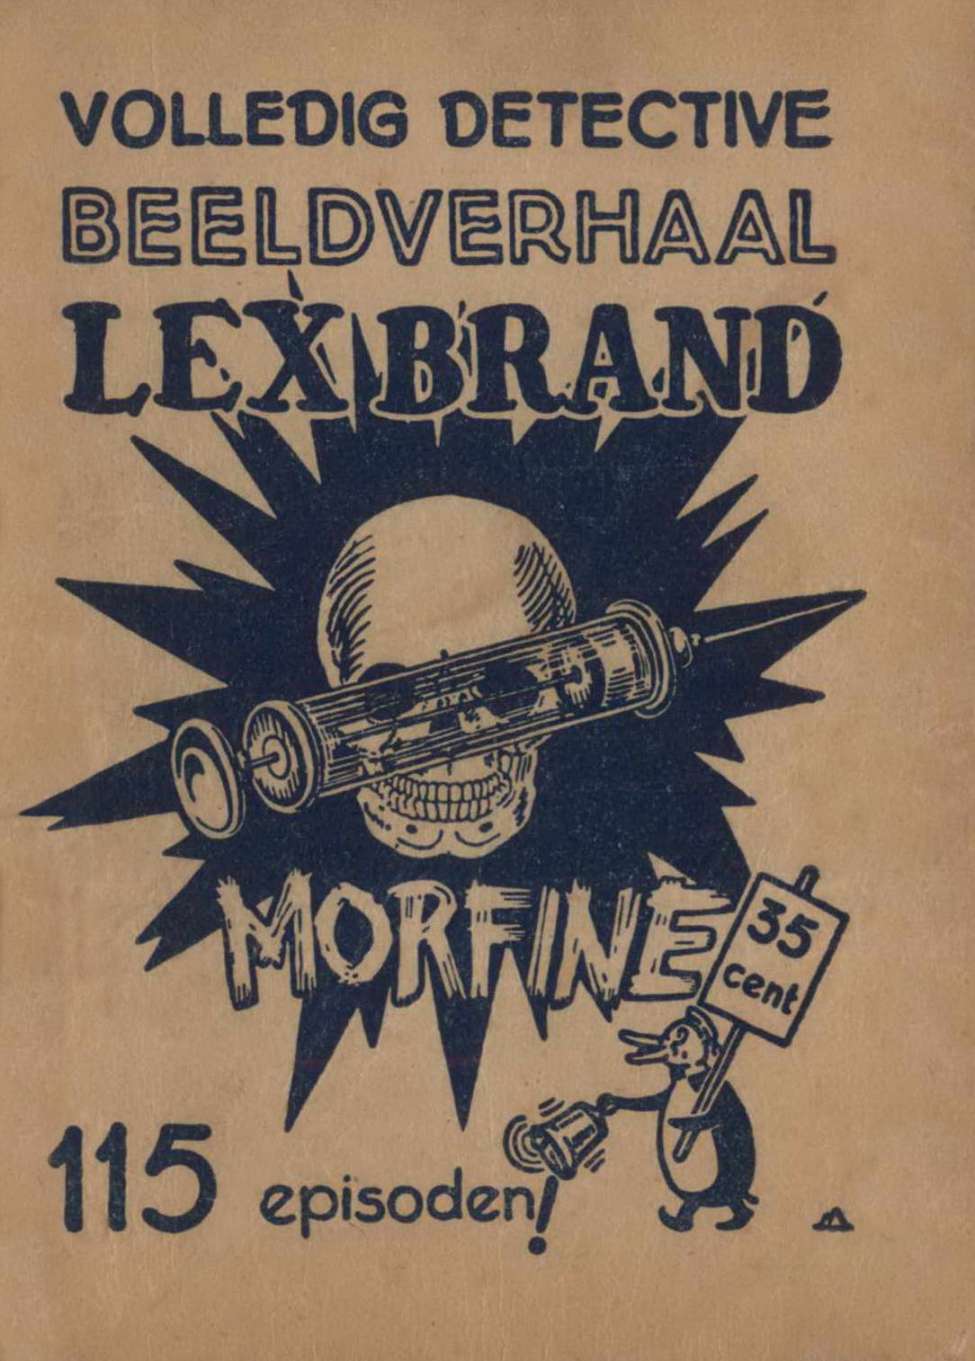 Comic Book Cover For Lex Brand 1 - Morfine